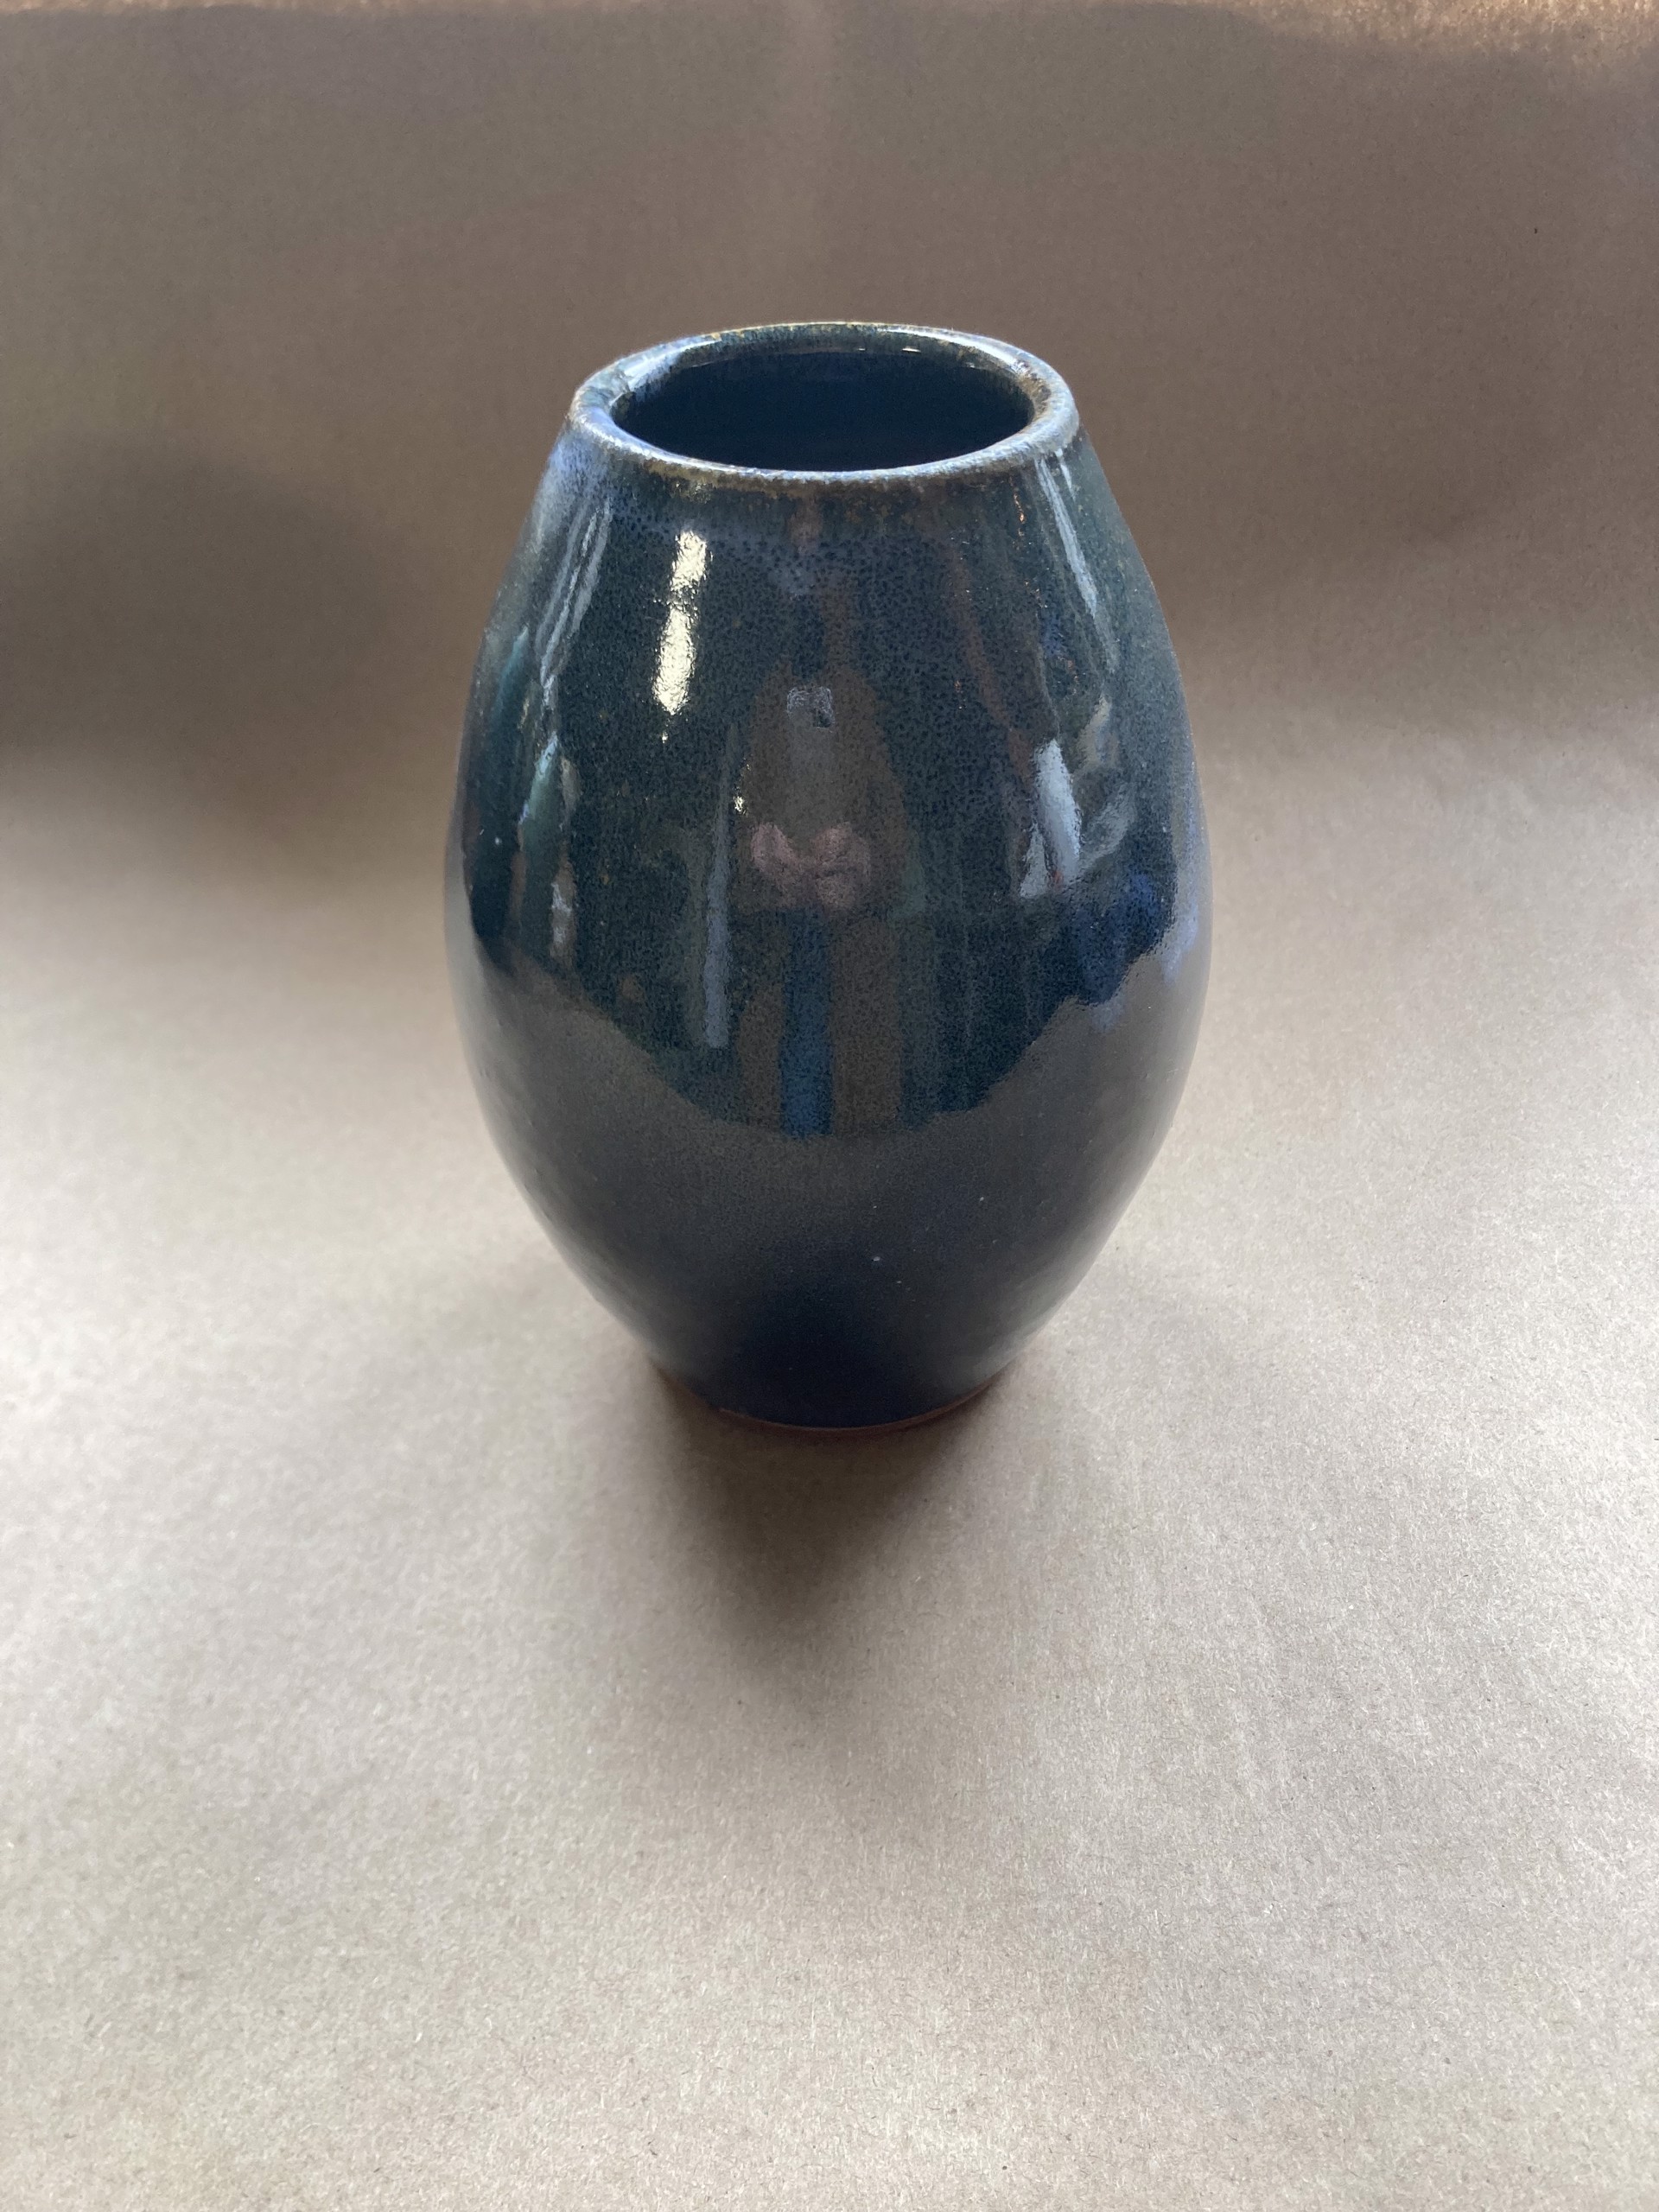 #12 Small Nouveau Vase by Michael Schael